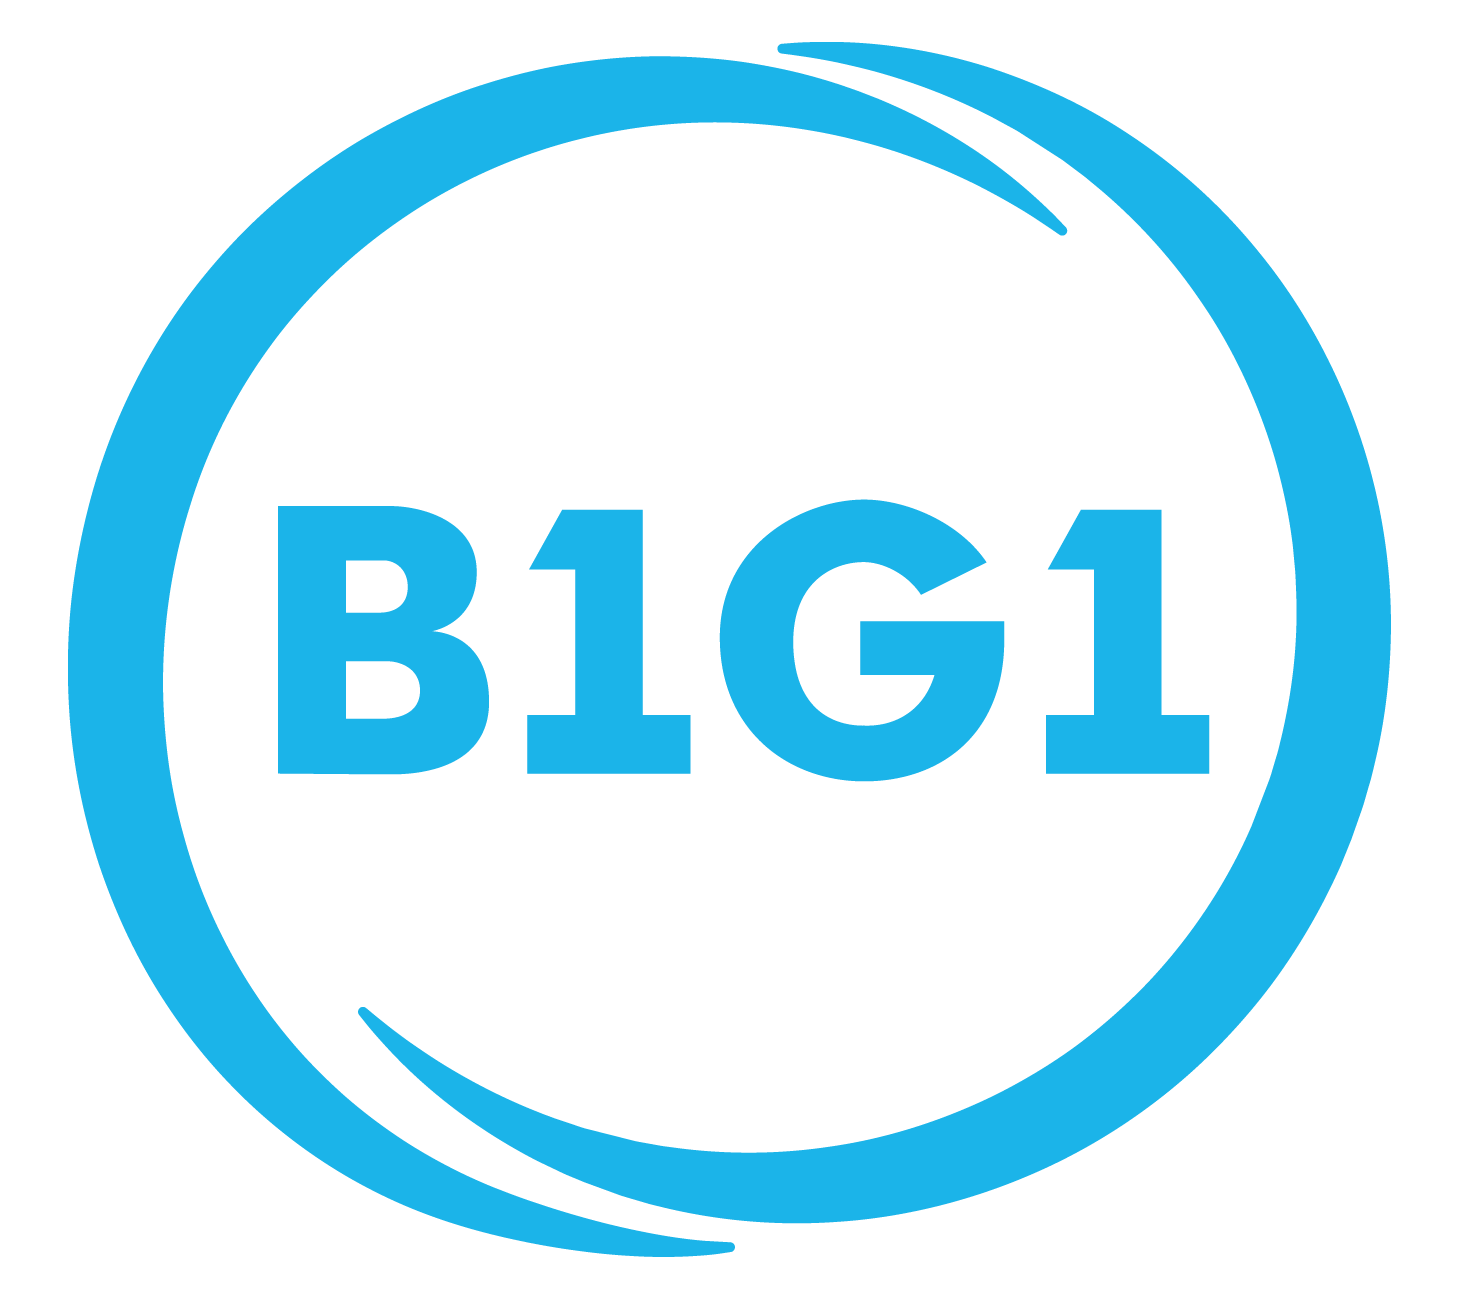 B1G1 Logo